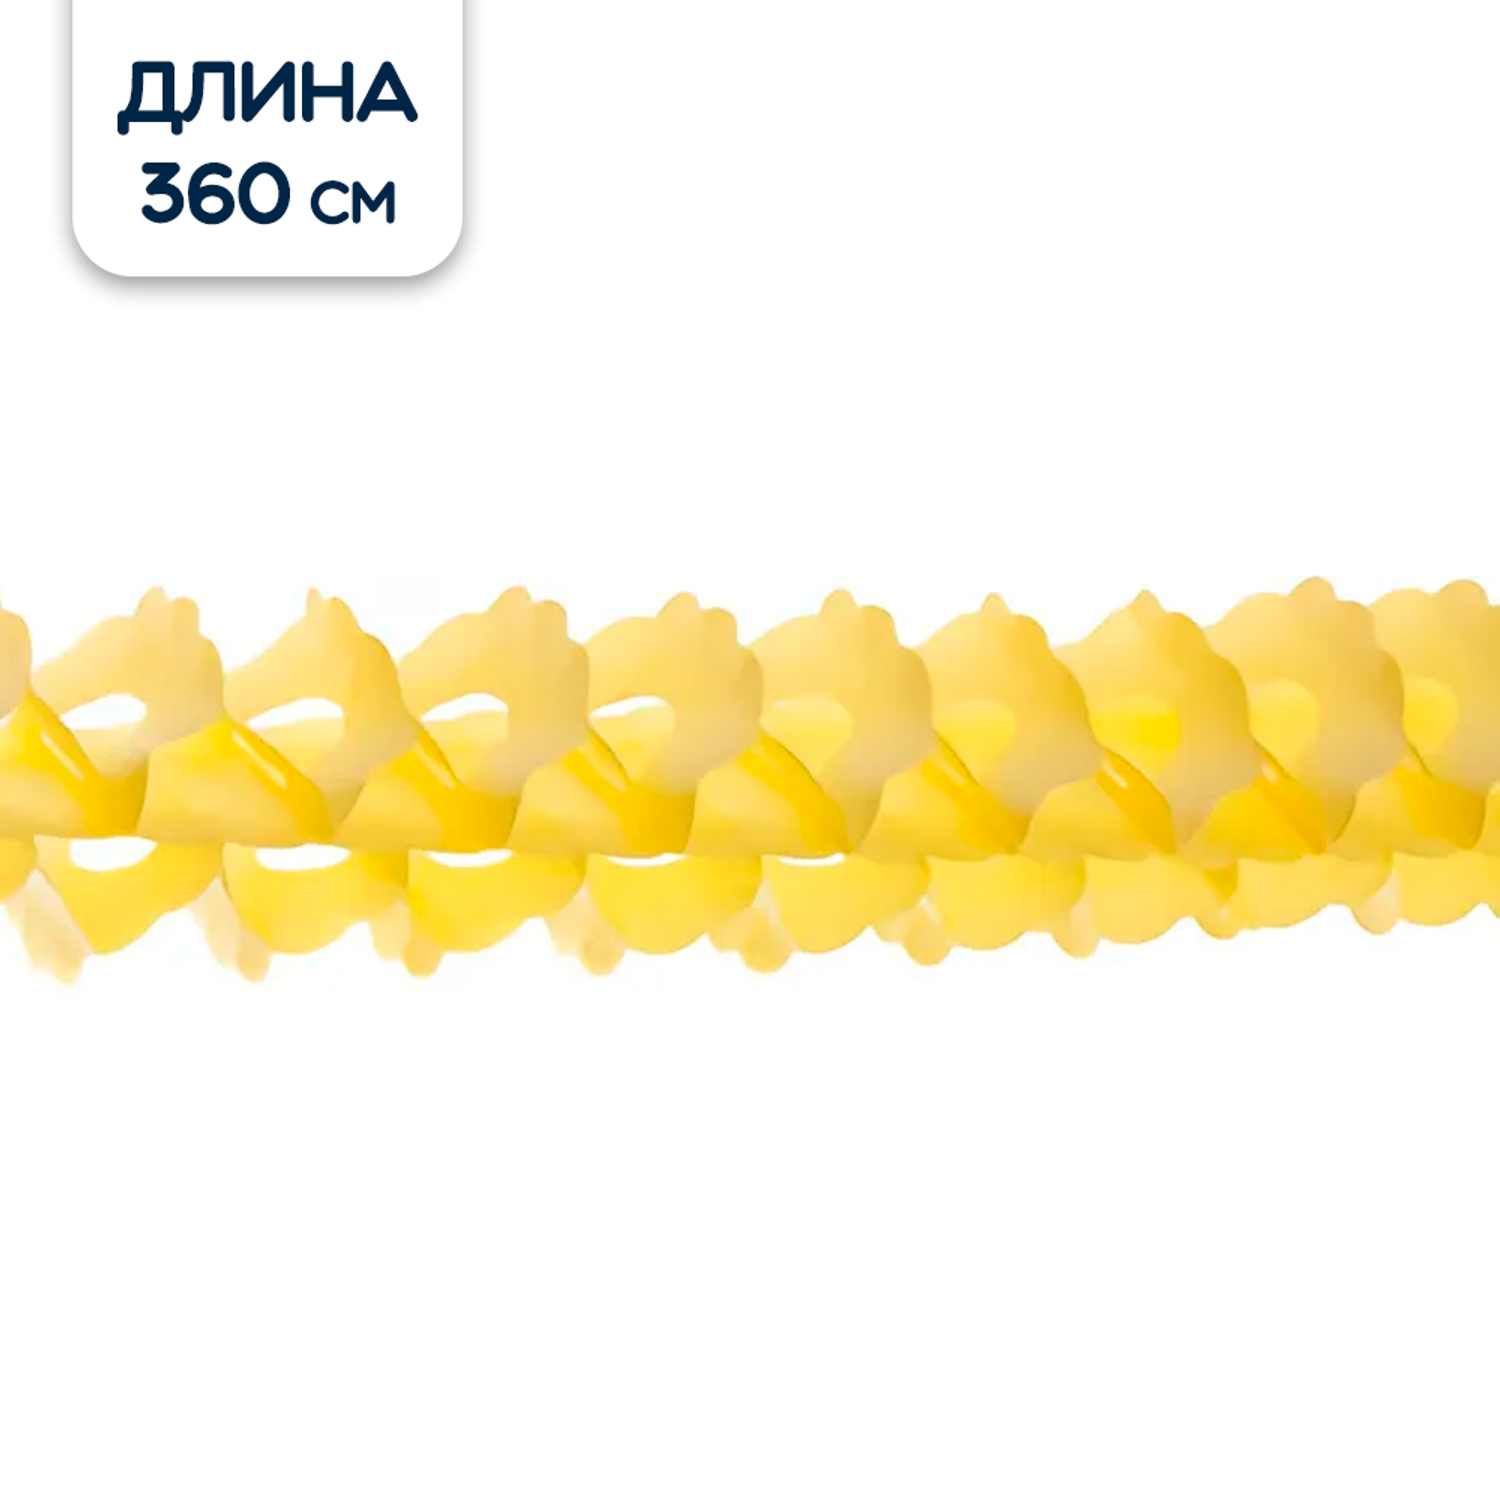 Гирлянда бумажная Riota декоративная желтая 360 см - фото 1